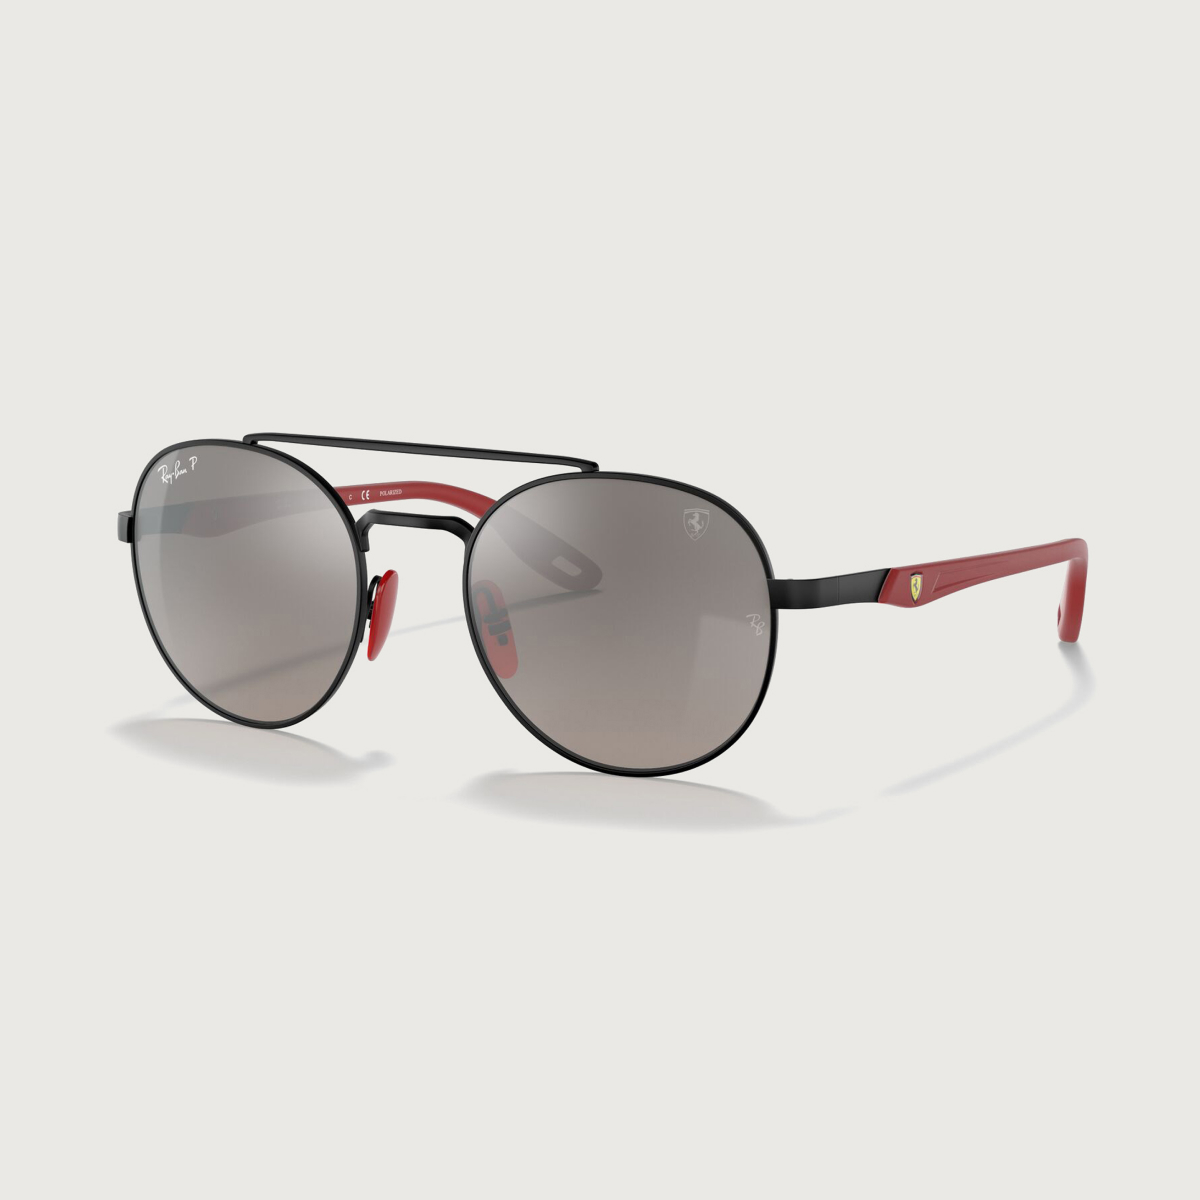 Black Ray-Ban for Scuderia Ferrari sunglasses with ombre grey lenses